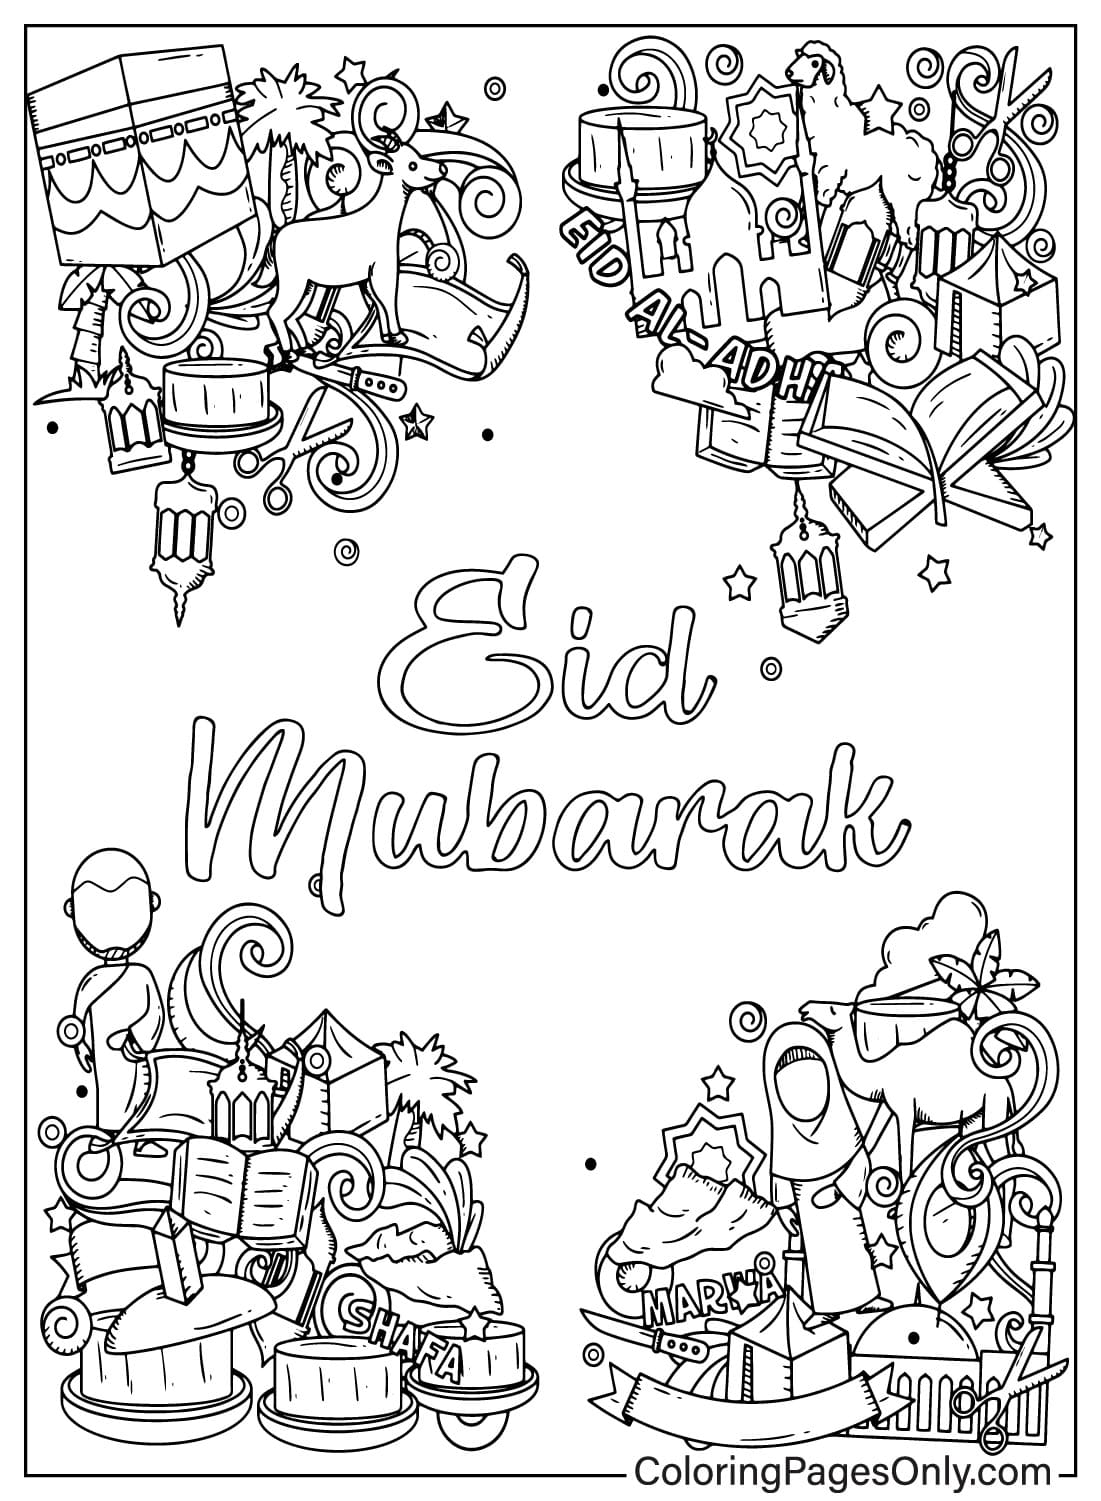 Página para colorear de Eid Mubarak de Eid Al-Fitr